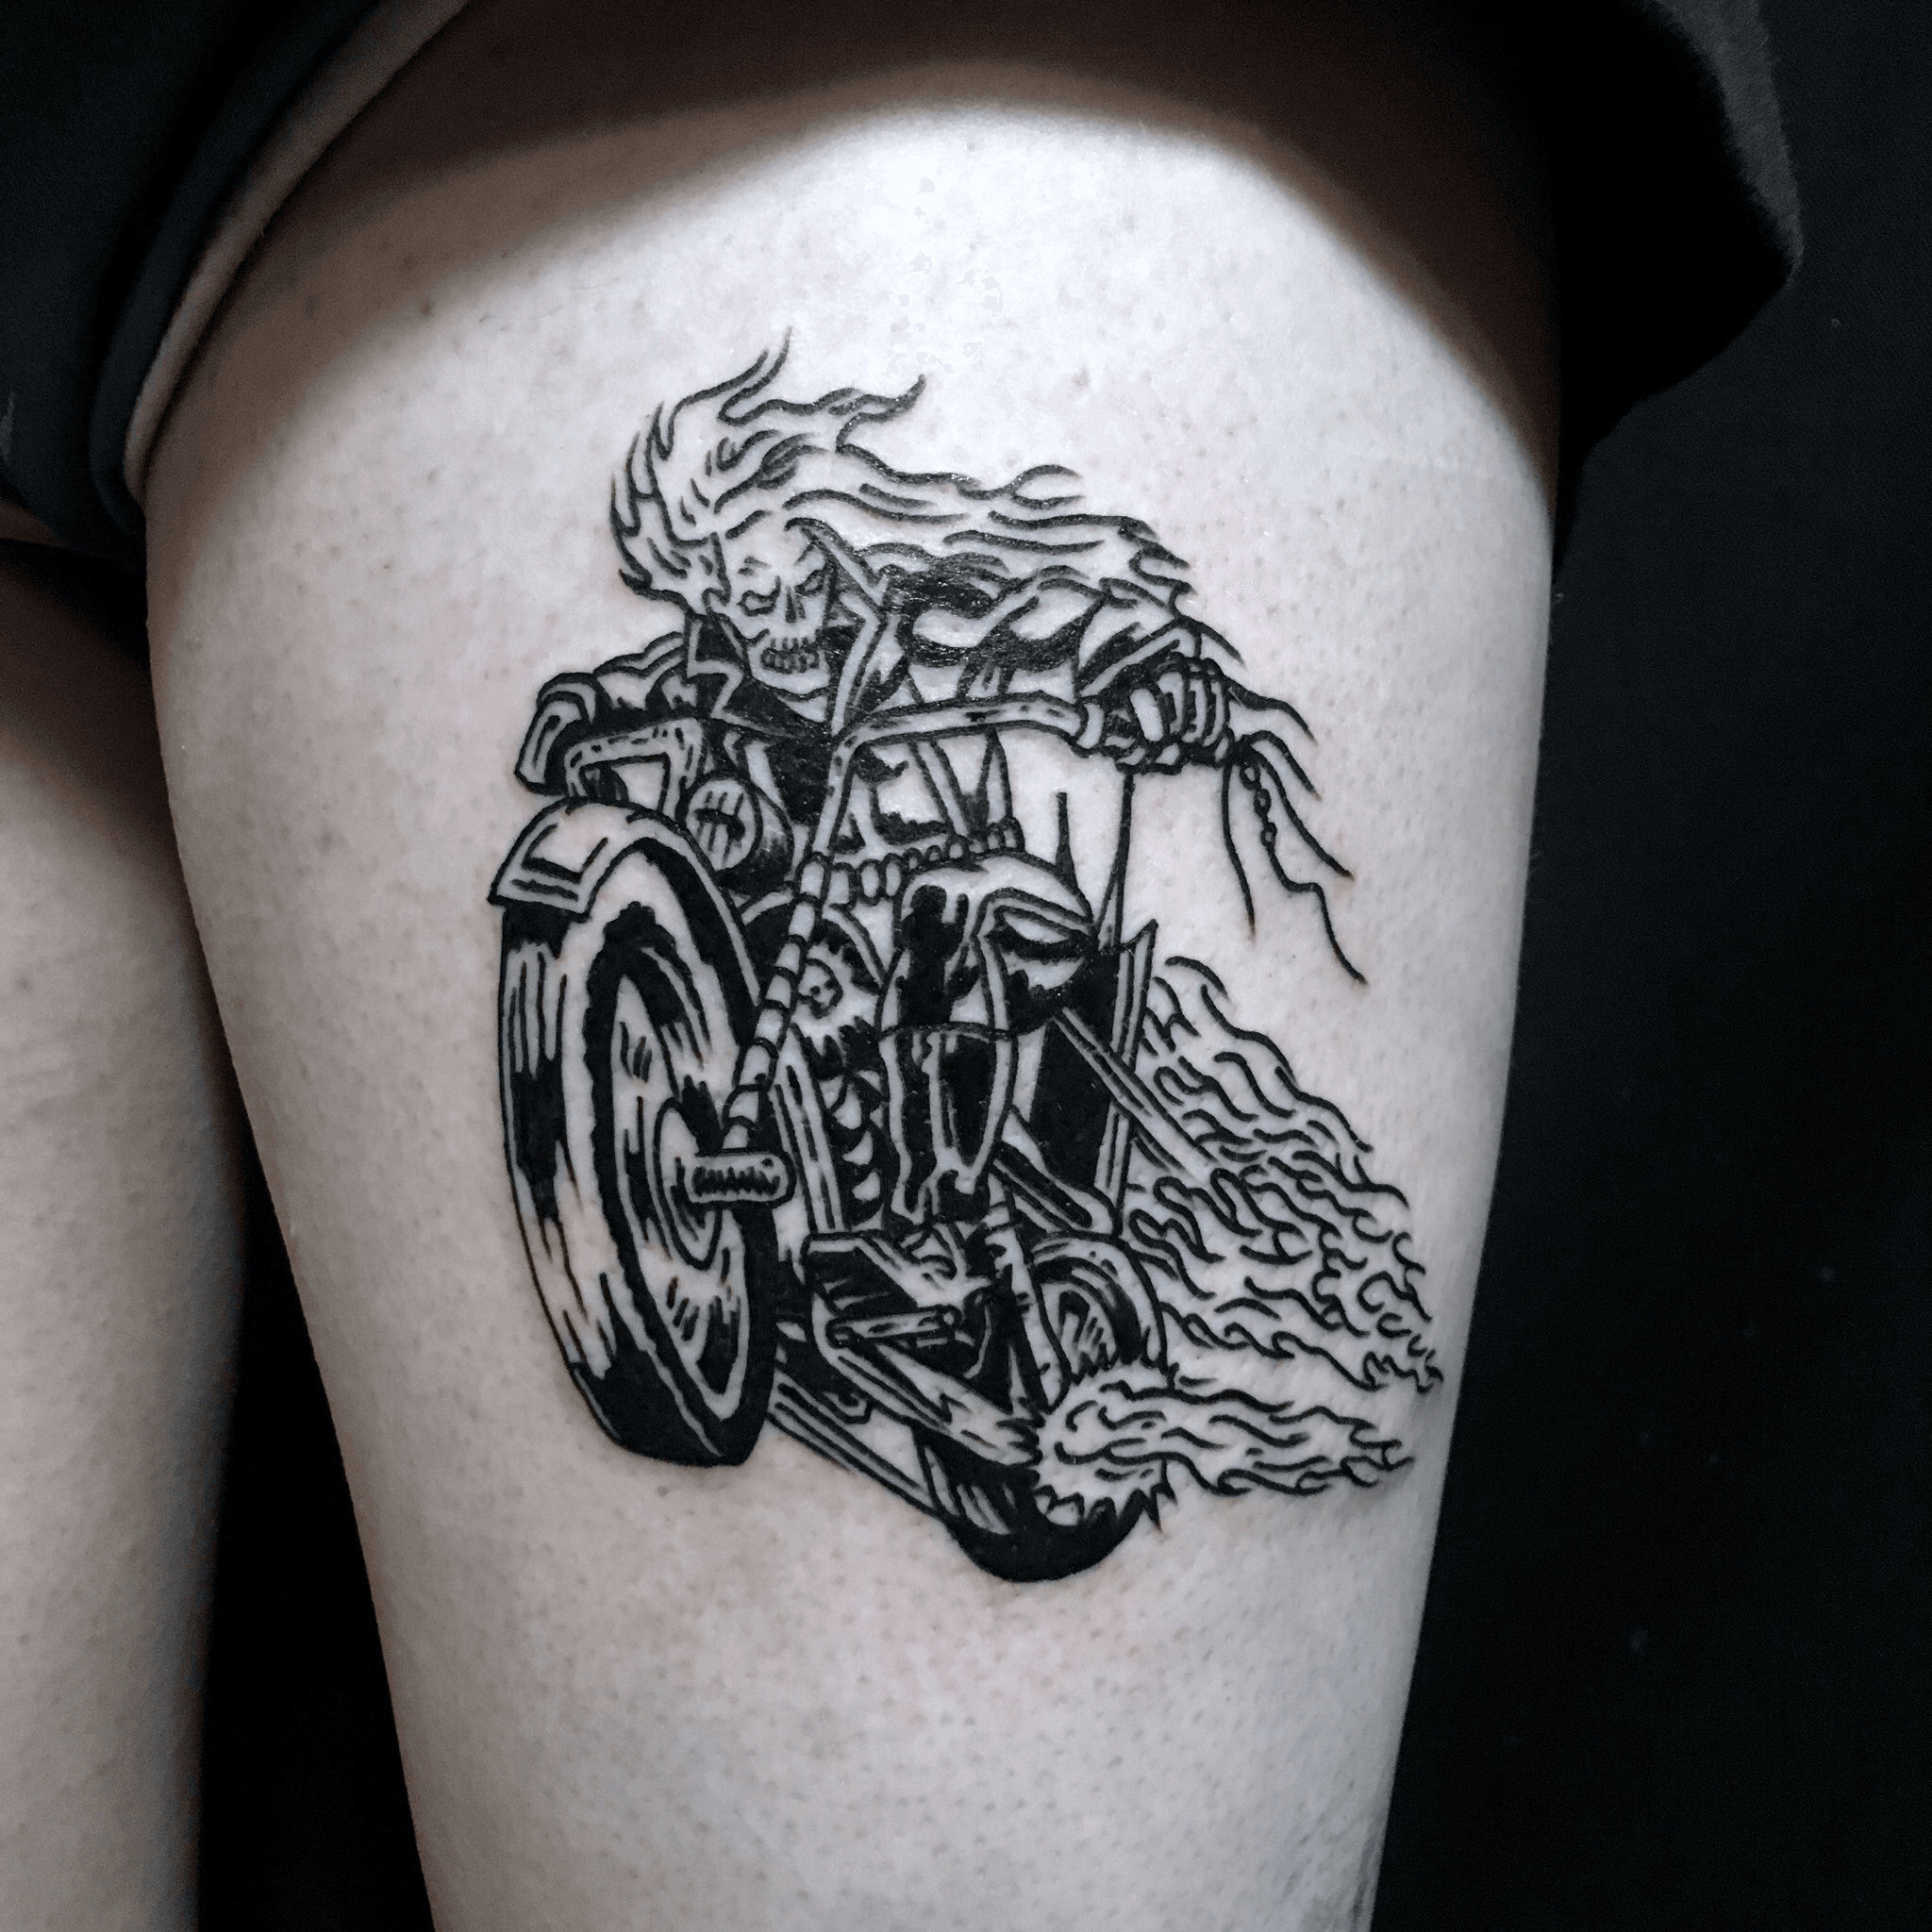 New Ghost Rider tattoo  rnerdtattoos